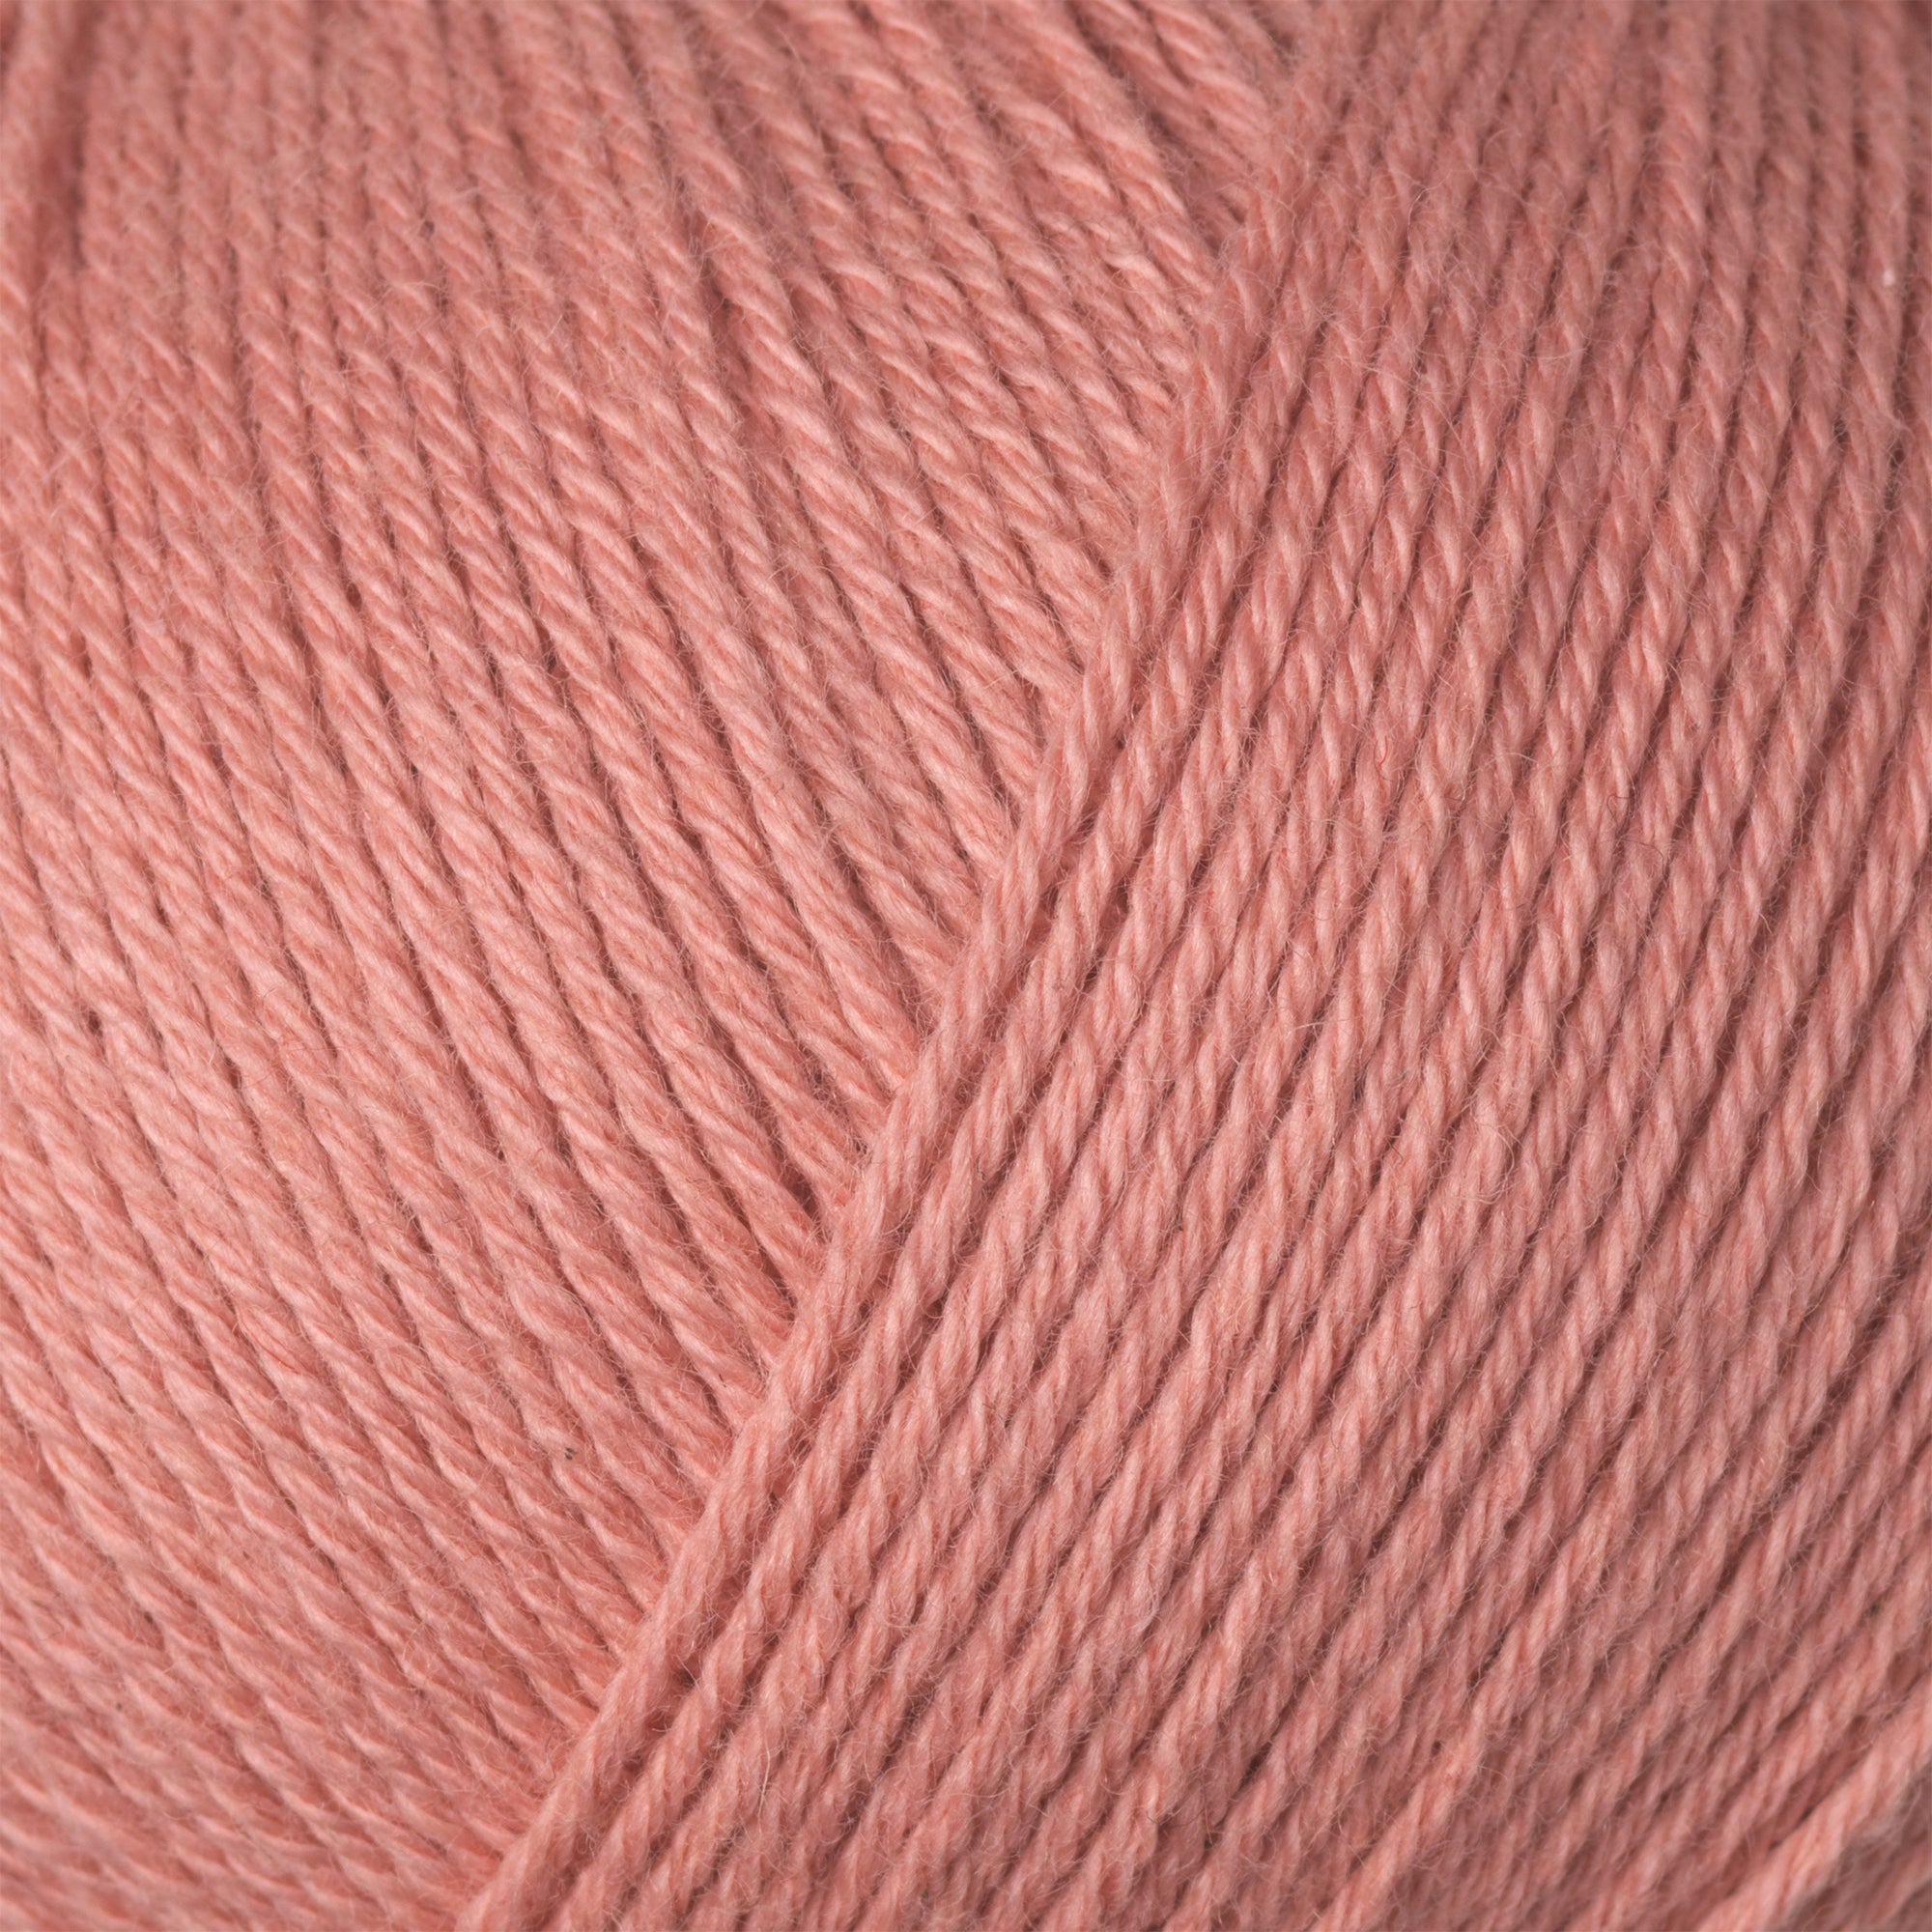 Knitting for Olive Cotton Merino - Rhabarber Rose